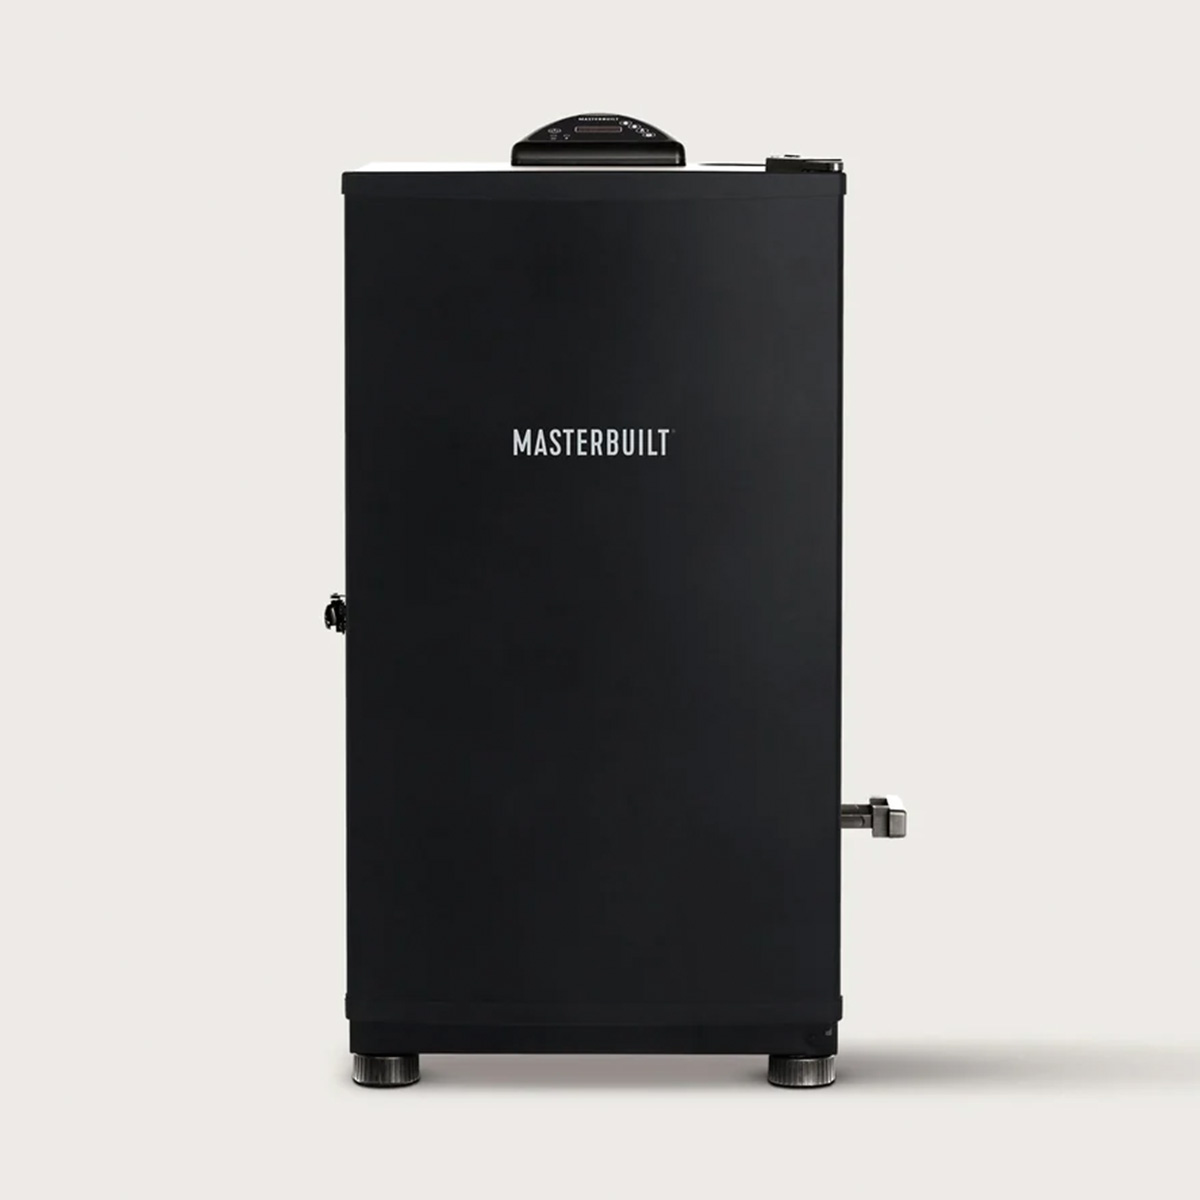 Masterbuilt Digitaler Elektro-Smoker, 76 cm